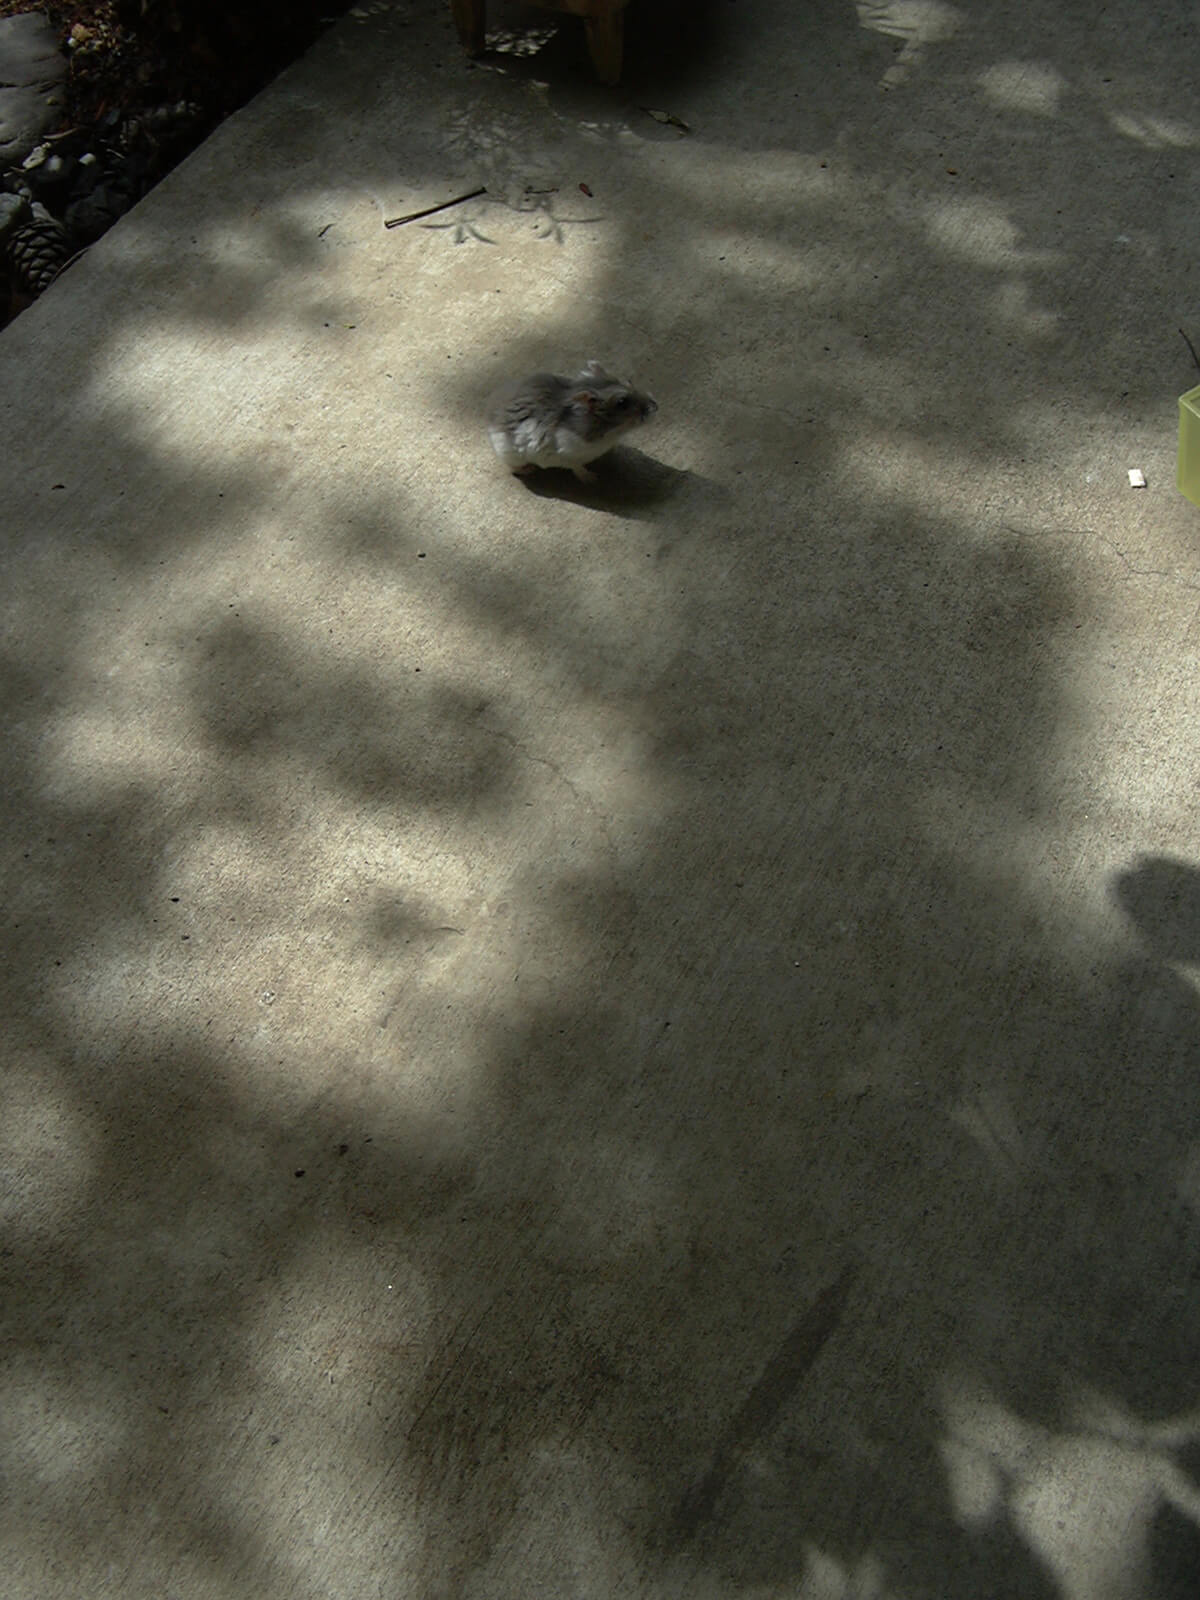 木の影が映った薄暗い土間の床にいる、小さな一匹のハムスター